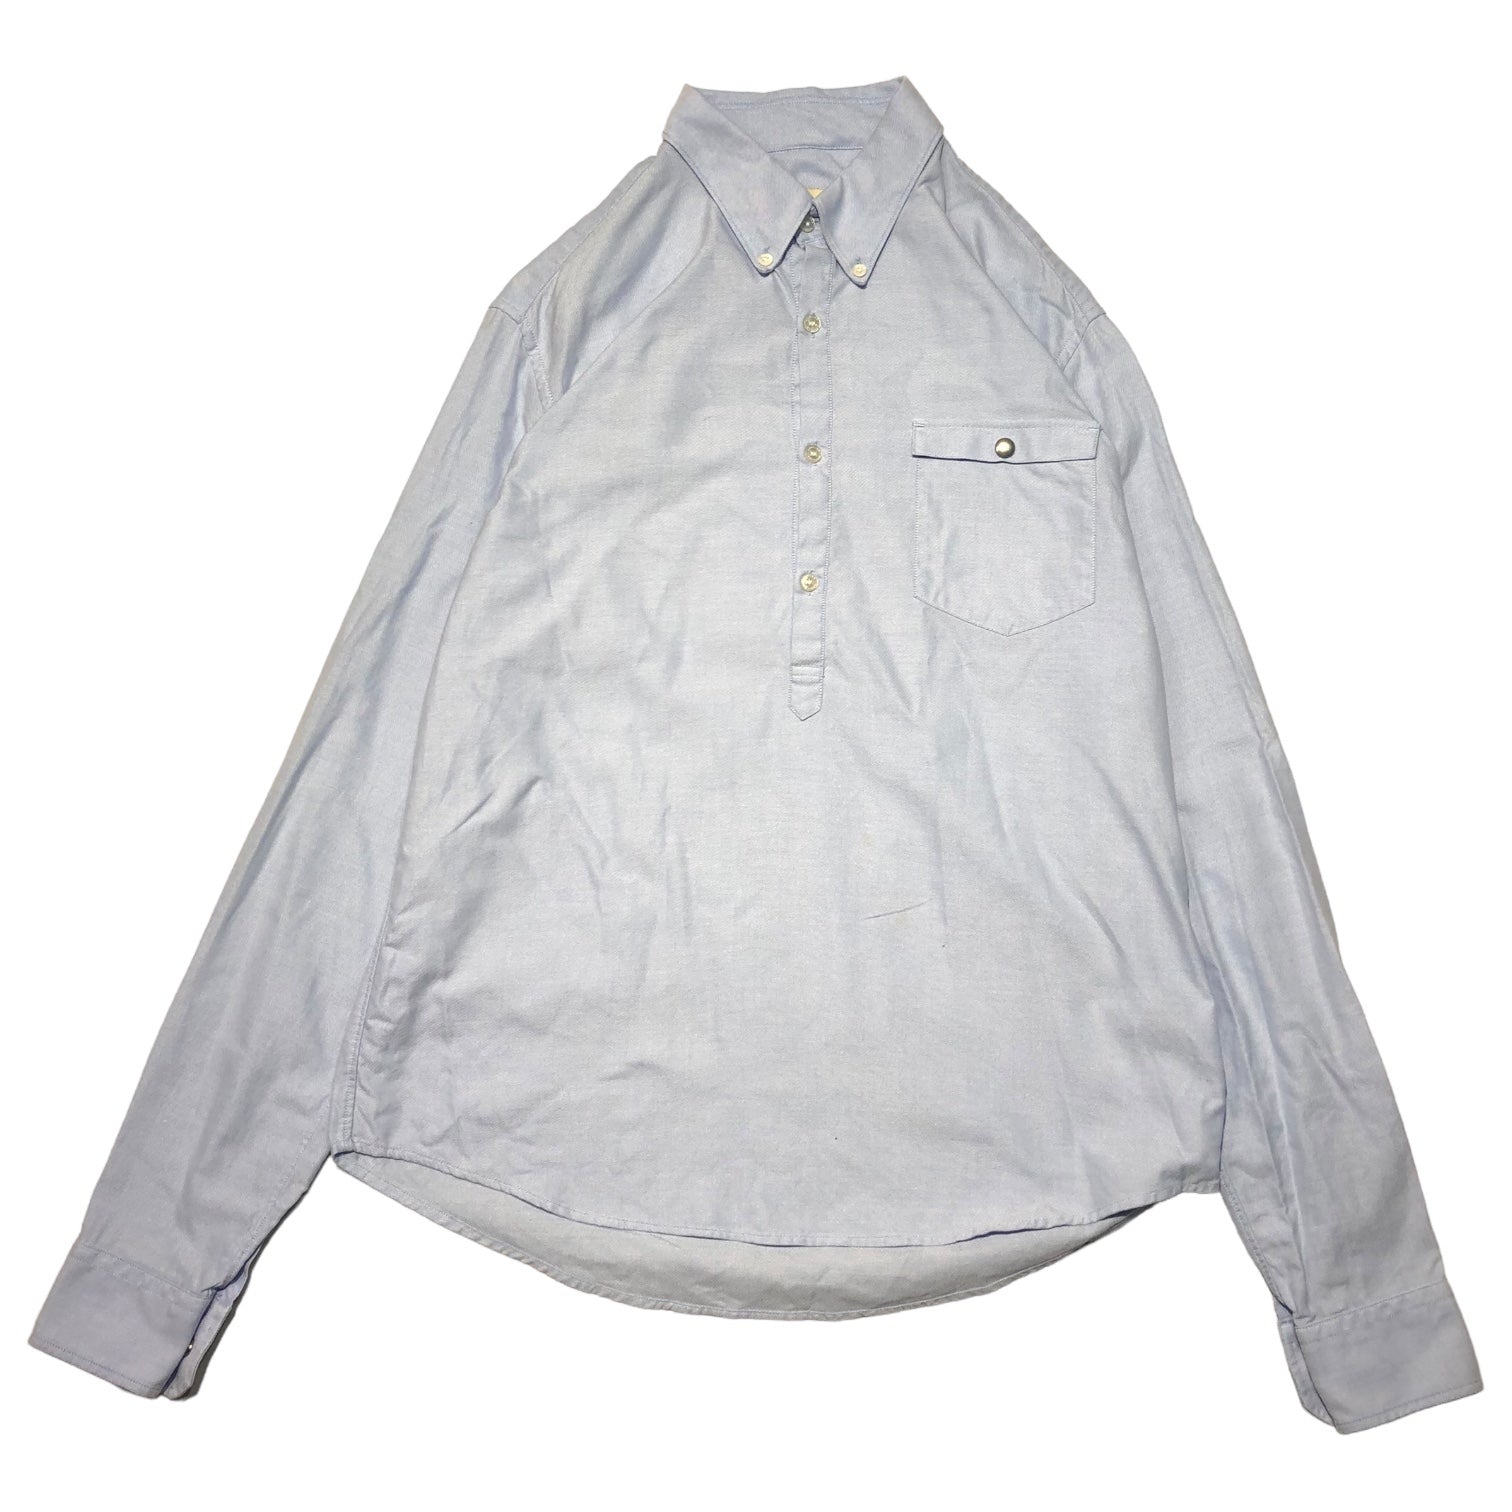 MONCLER(モンクレール)  pullover oxford shirt プルオーバー オックス フォード シャツ 102-09V-52010-00 0209V520 1000 L スカイブルー 長袖